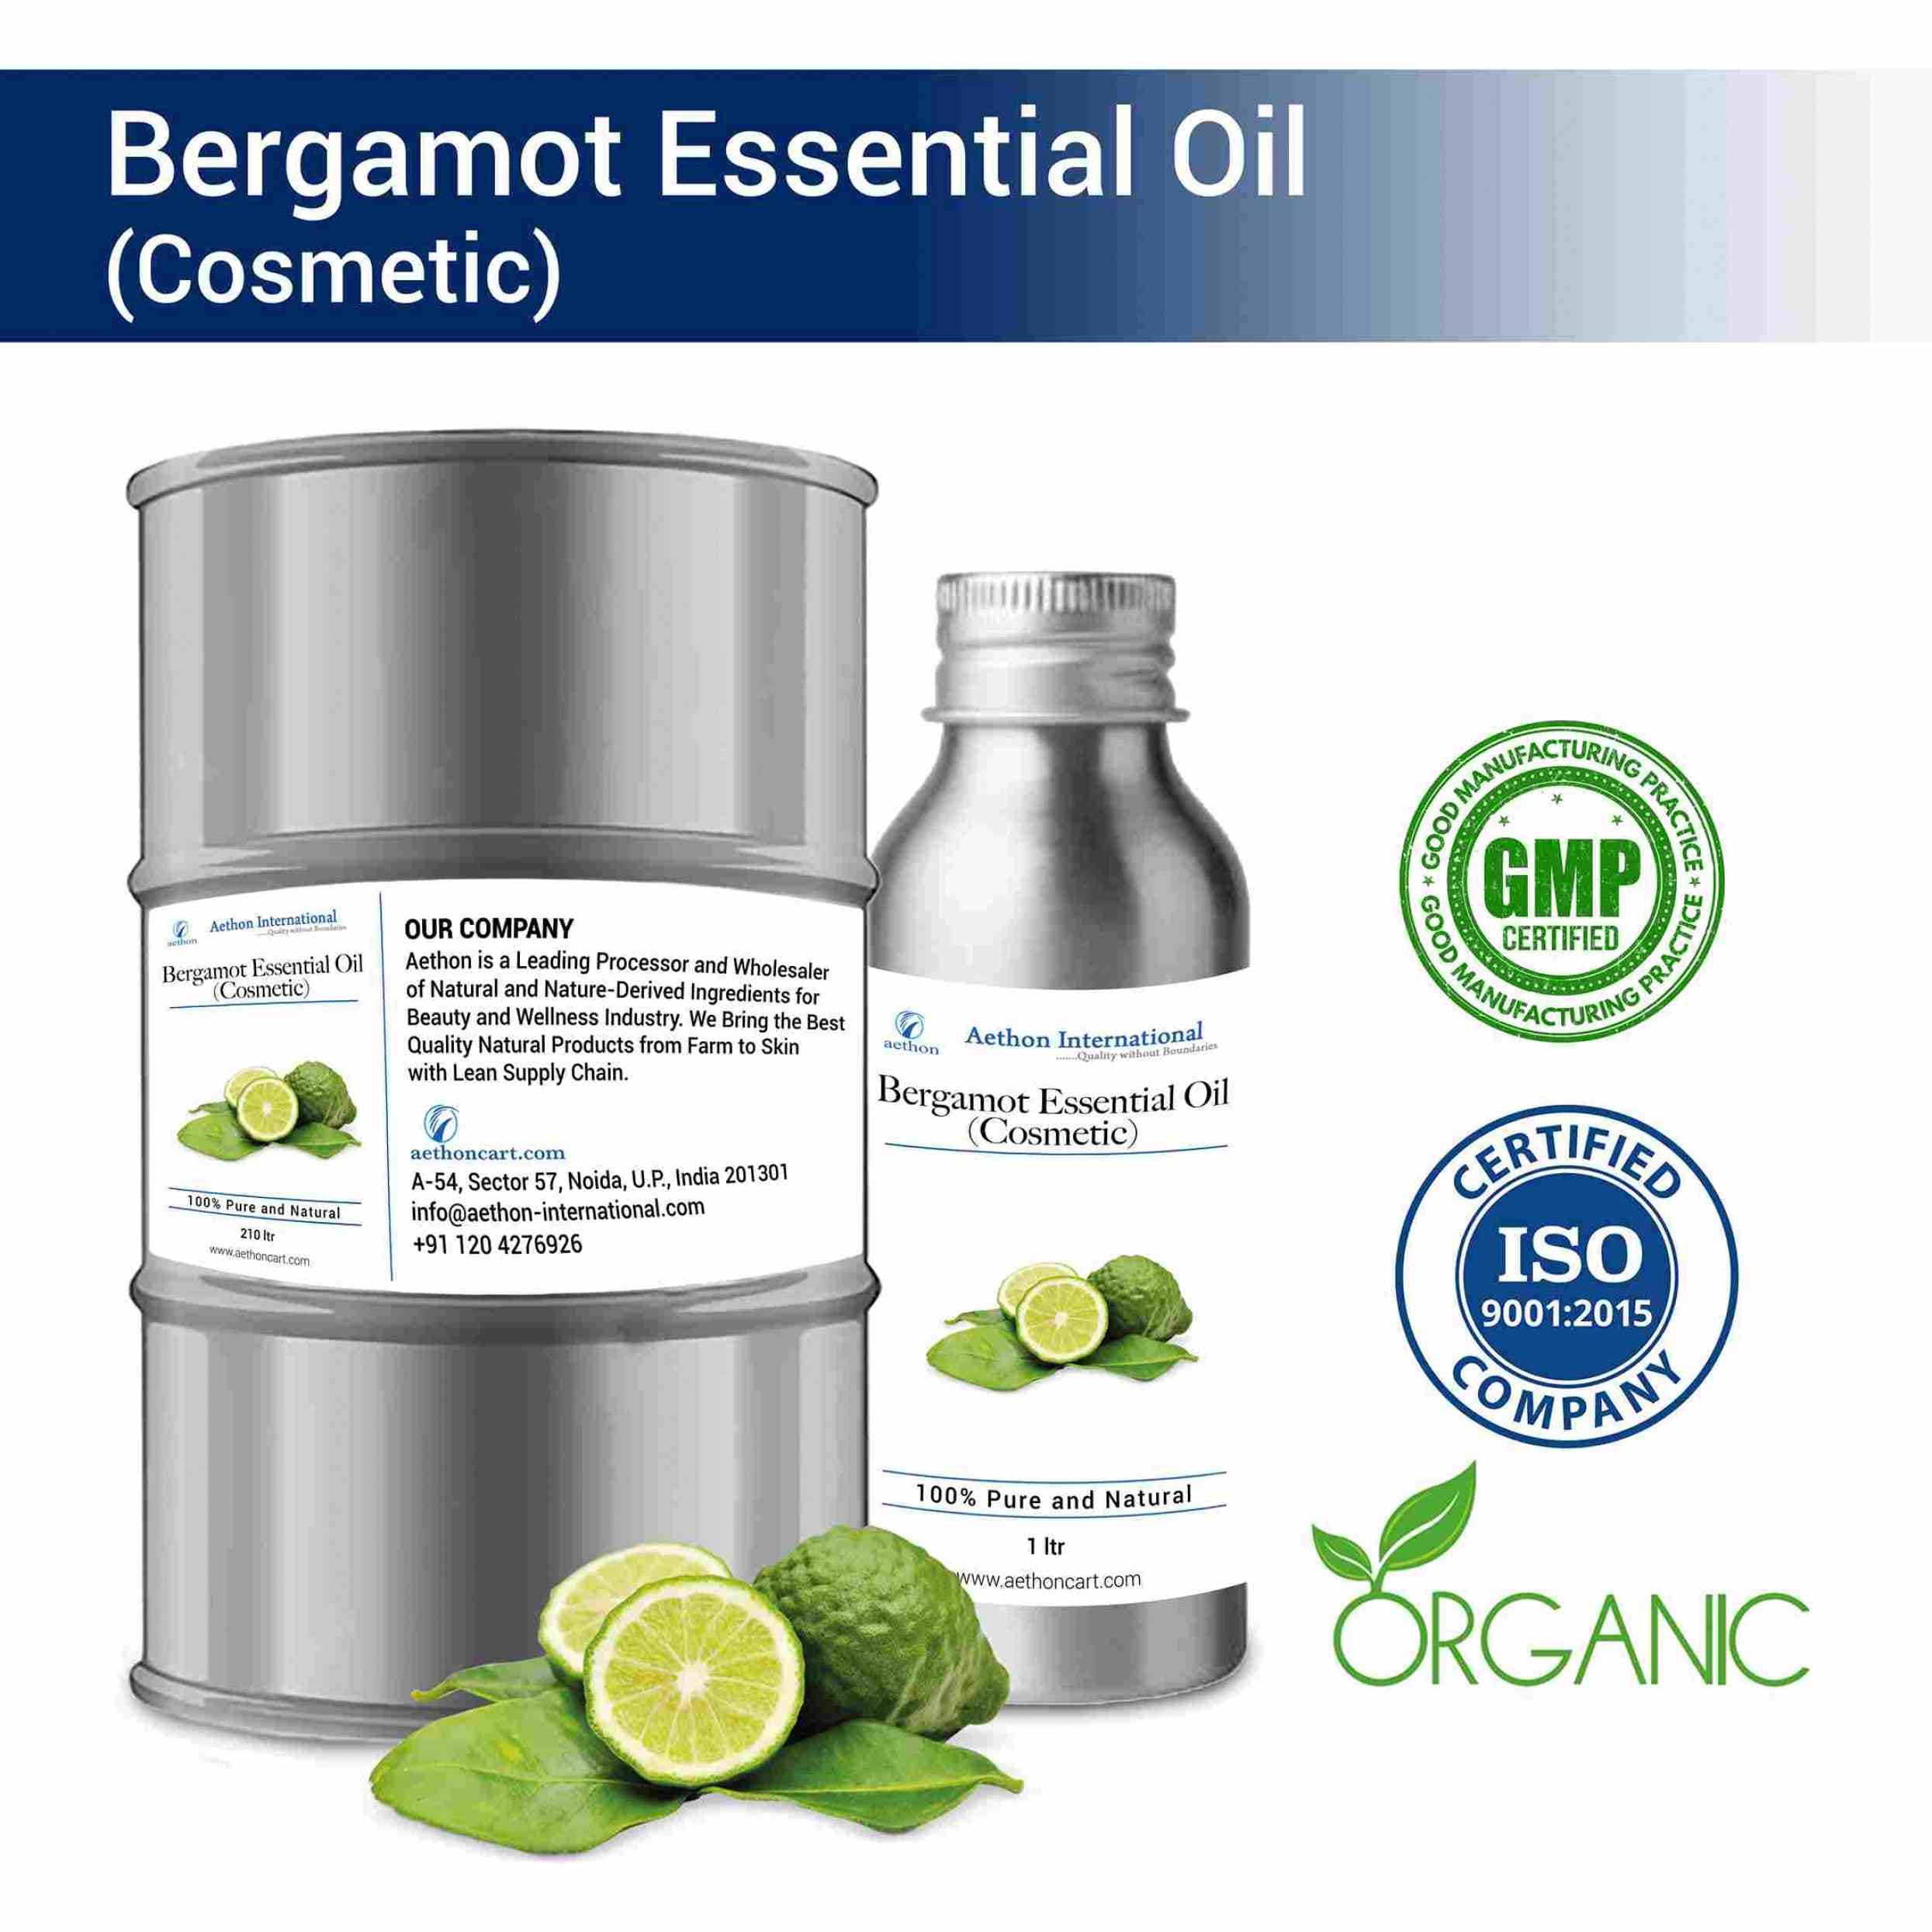 Bergamot Essential Oil (Cosmetic)